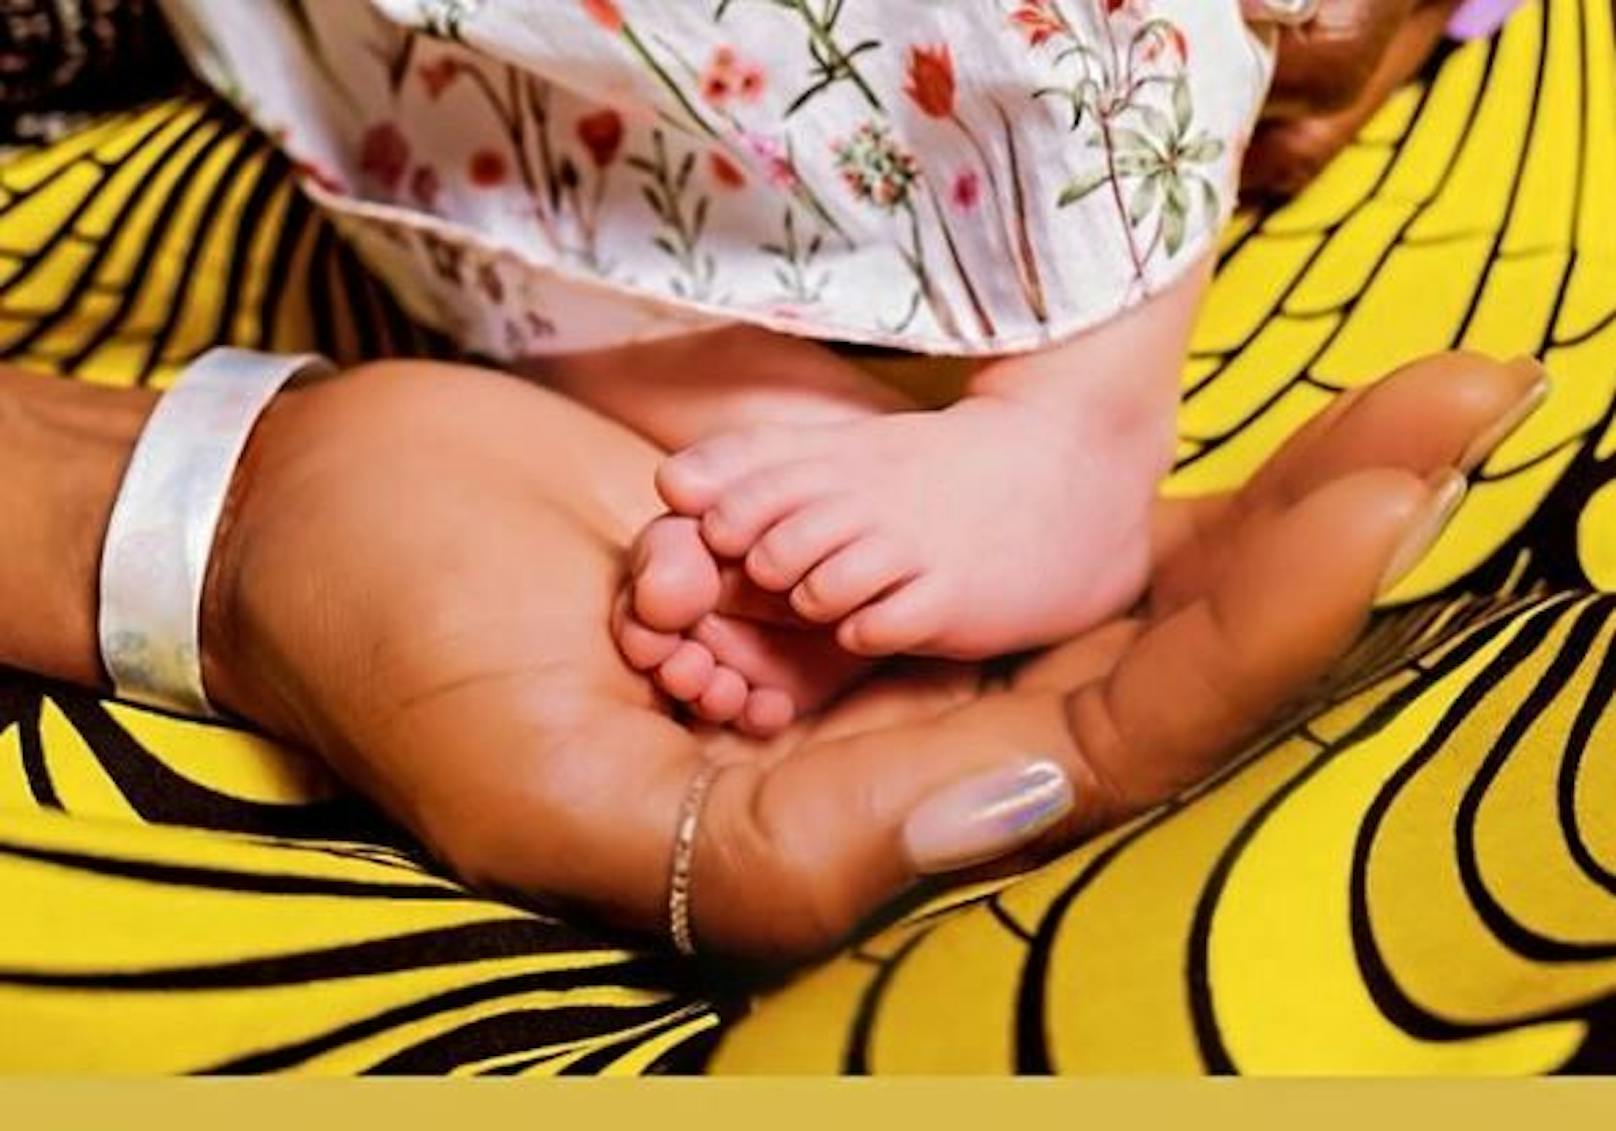 Supermodel Naomi Campbell enthüllte auf Instagram, dass sie erstmals Mutter geworden ist. Für viele kommt die Nachricht überraschend, da Naomi in den vergangenen Monaten nie mit Babybauch gesichtet wurde.